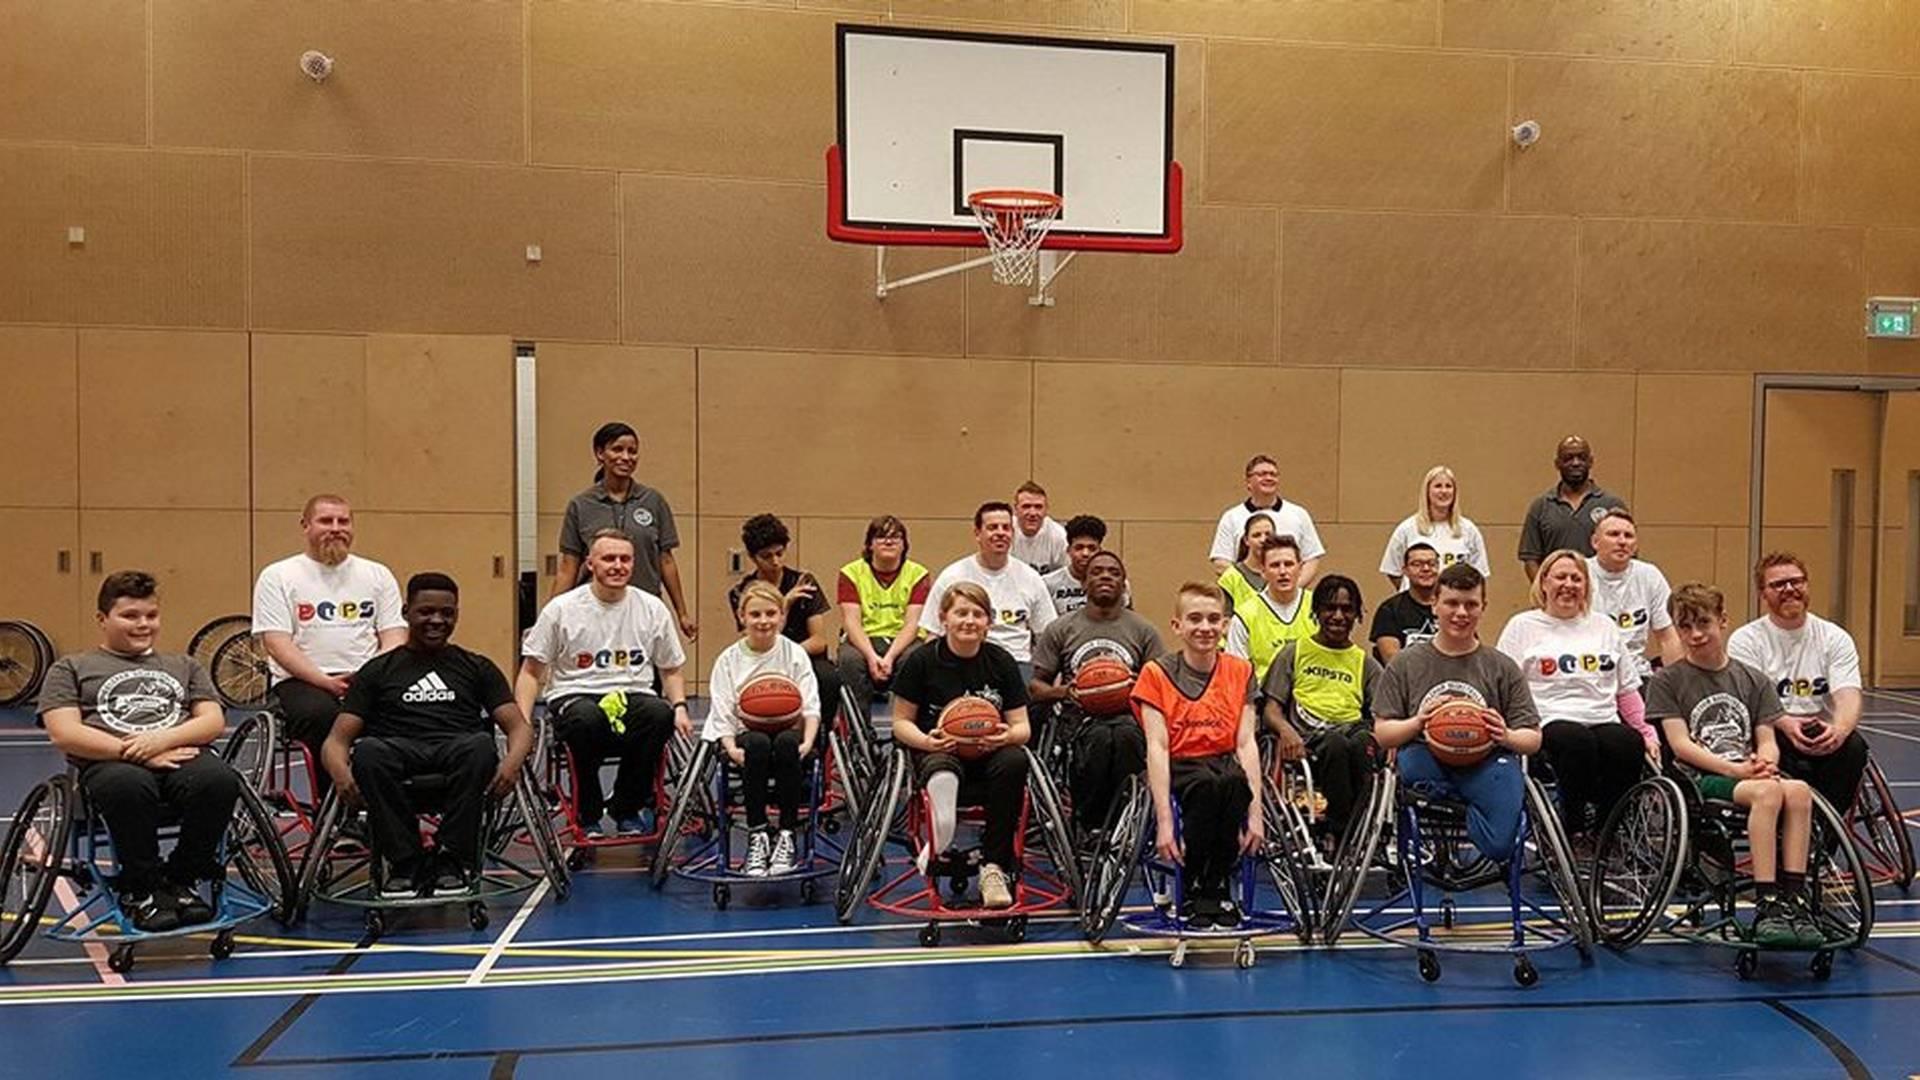 London All Stars Wheelchair Basketball Club photo